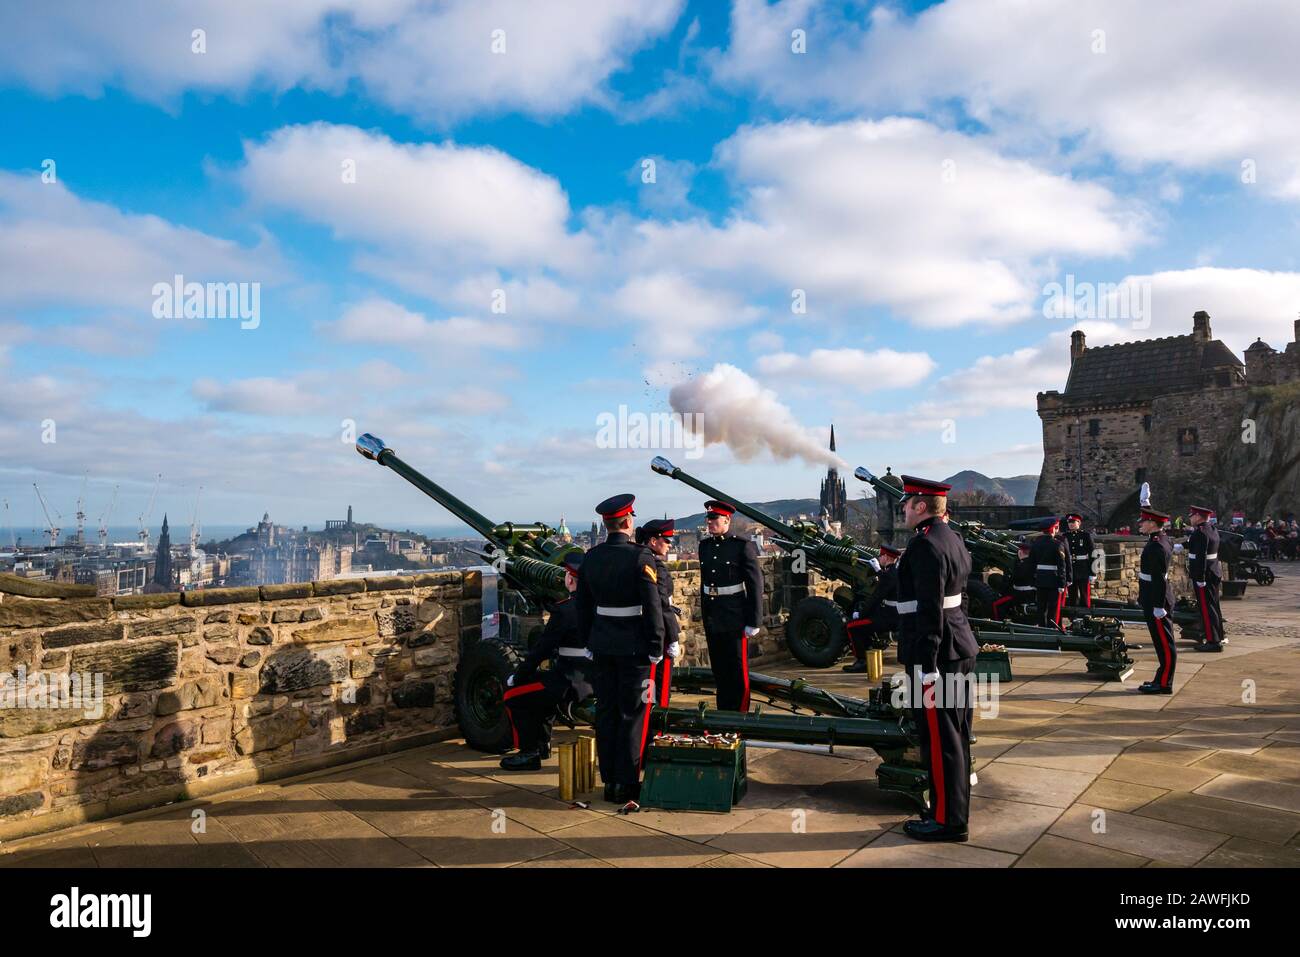 21 saluto per le armi che segnano l'adesione della regina Elisabetta al trono nel 2020, Castello di Edimburgo, Scozia, Regno Unito Foto Stock